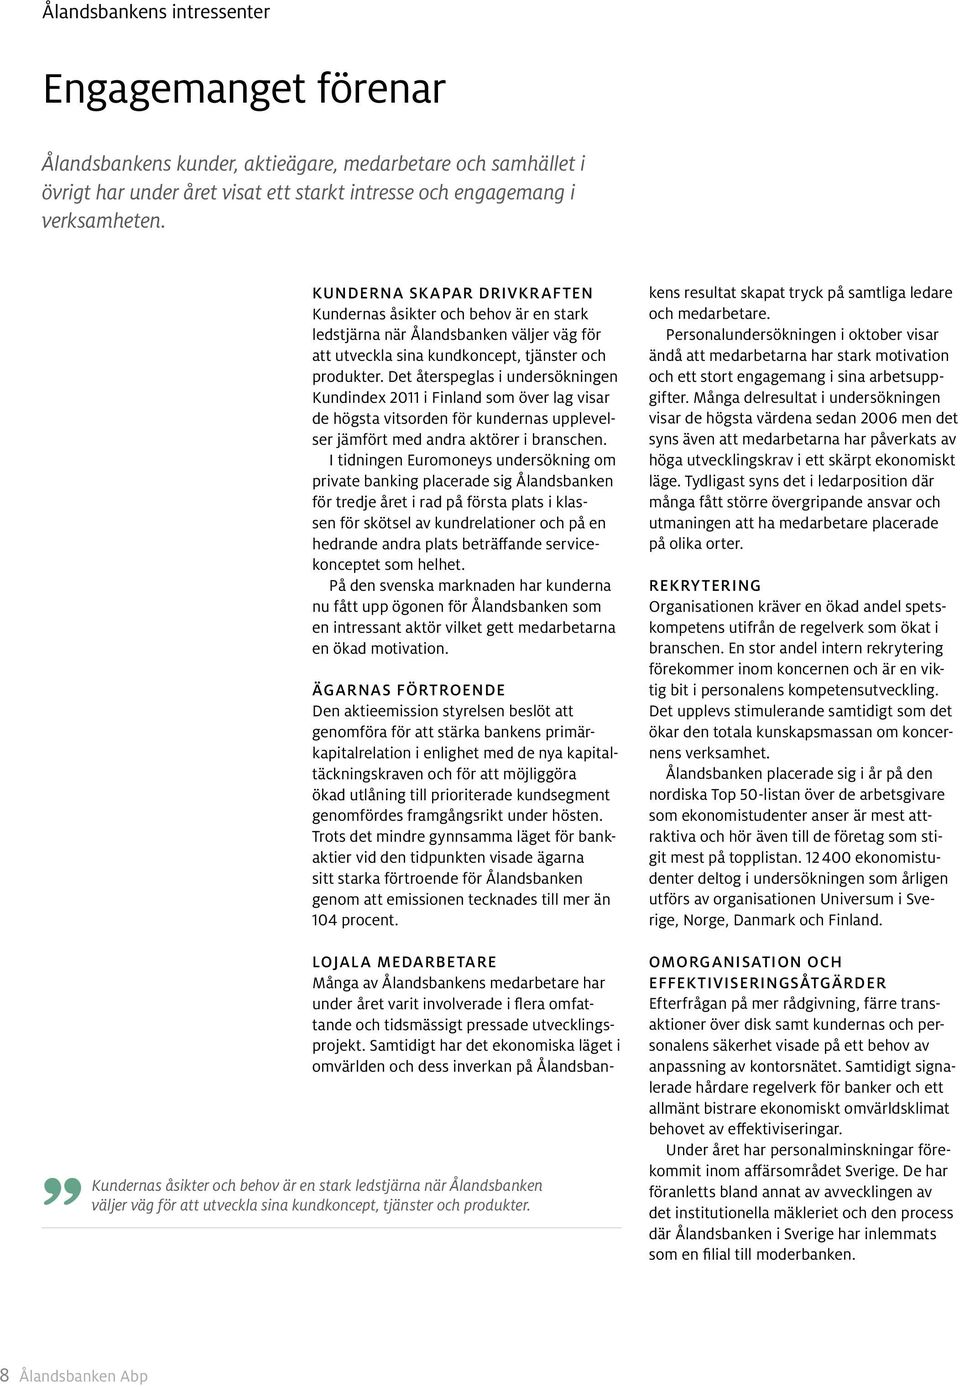 Det återspeglas i undersökningen Kundindex 2011 i Finland som över lag visar de högsta vitsorden för kundernas upplevelser jämfört med andra aktörer i branschen.